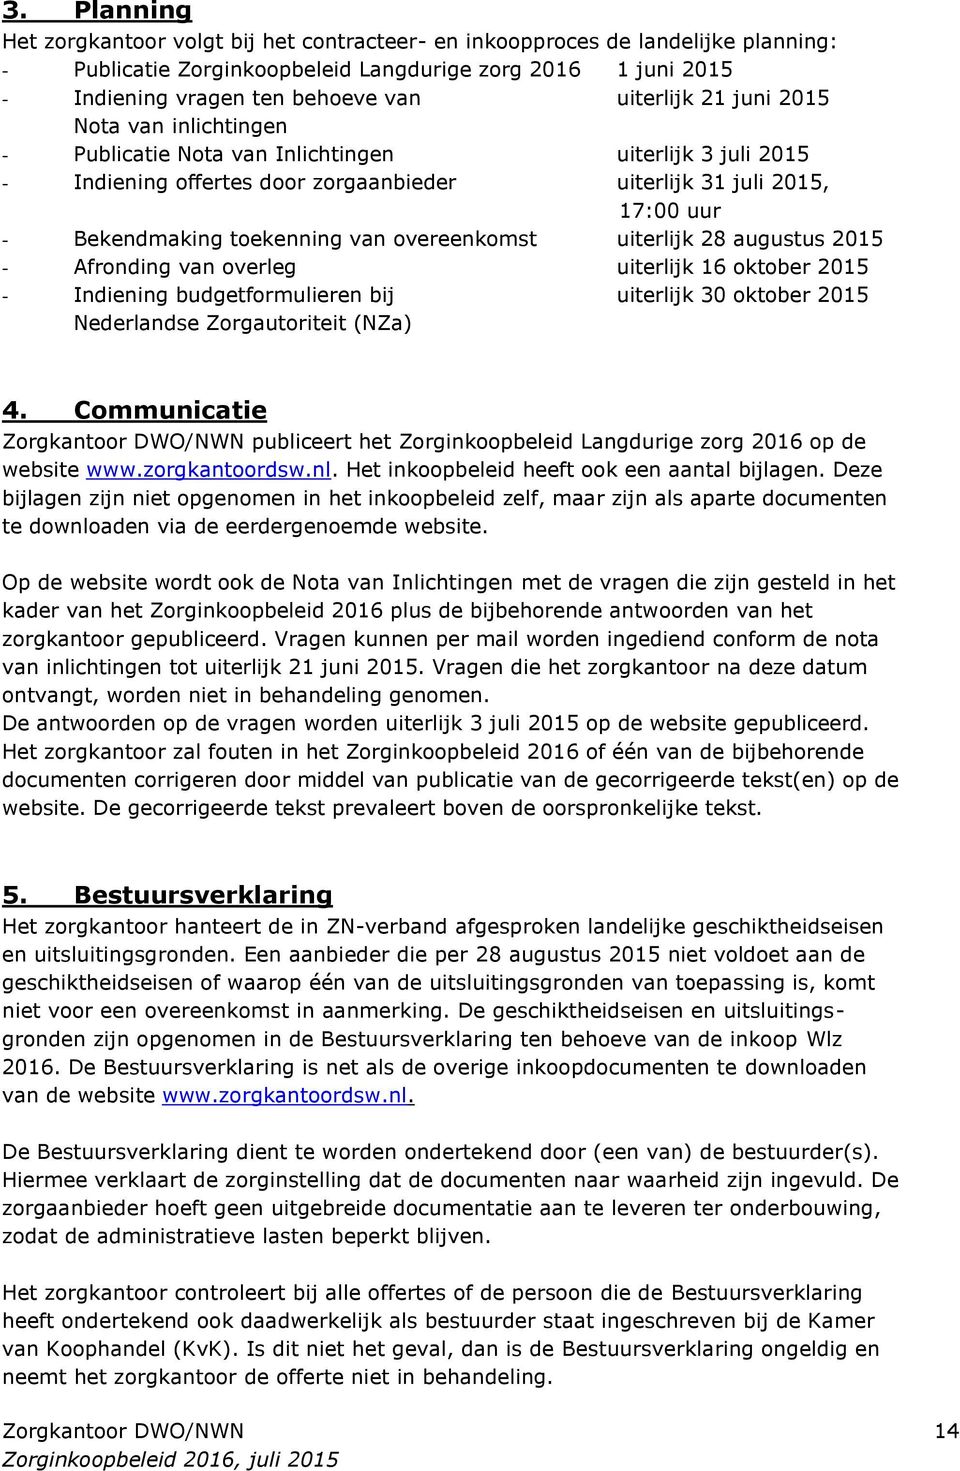 toekenning van overeenkomst uiterlijk 28 augustus 2015 - Afronding van overleg uiterlijk 16 oktober 2015 - Indiening budgetformulieren bij uiterlijk 30 oktober 2015 Nederlandse Zorgautoriteit (NZa) 4.